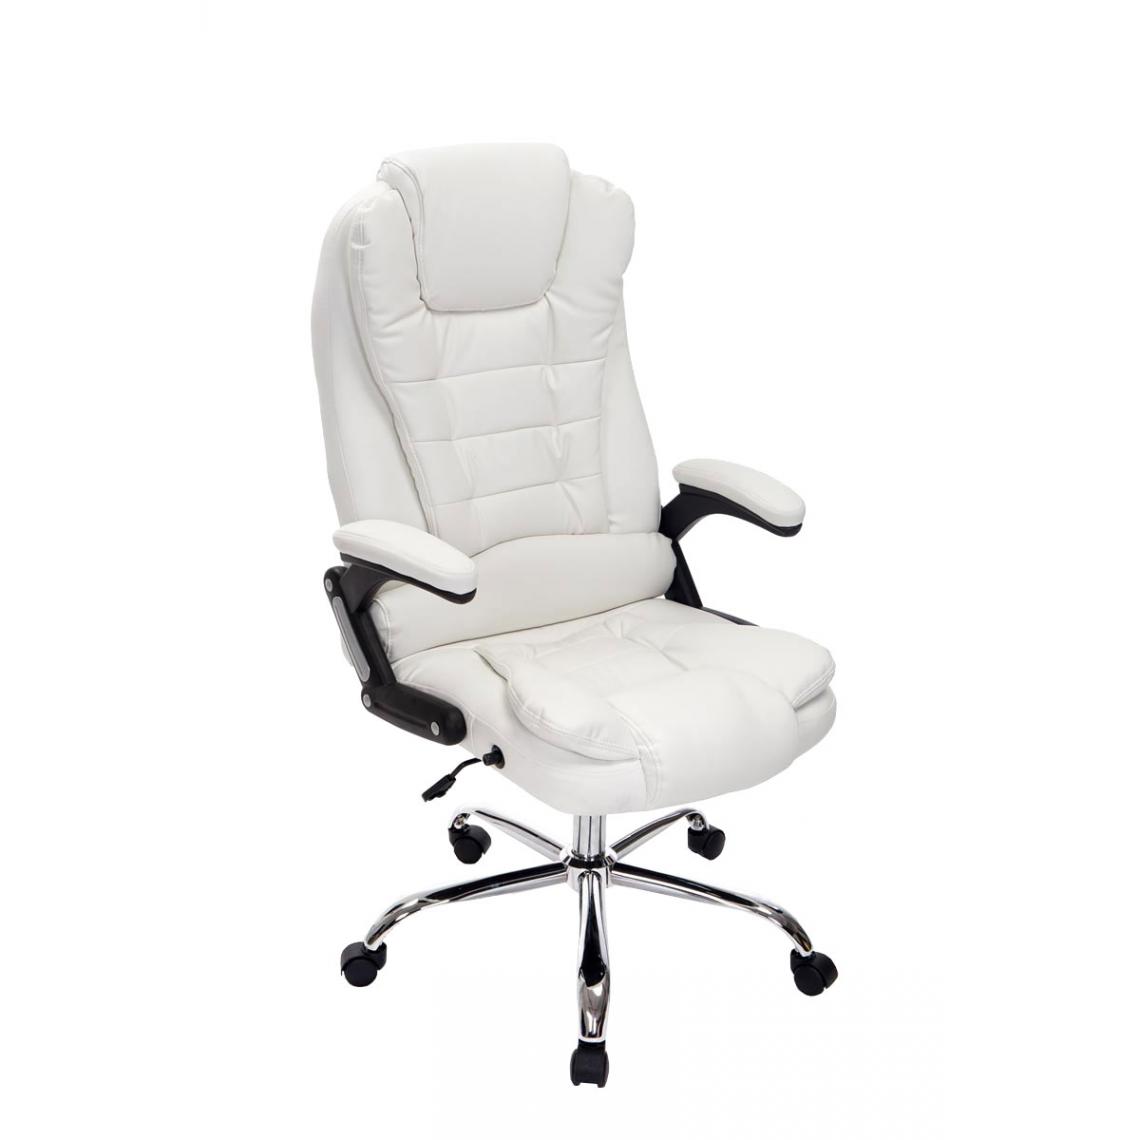 Icaverne - Magnifique Chaise de bureau serie Manama couleur blanc - Chaises